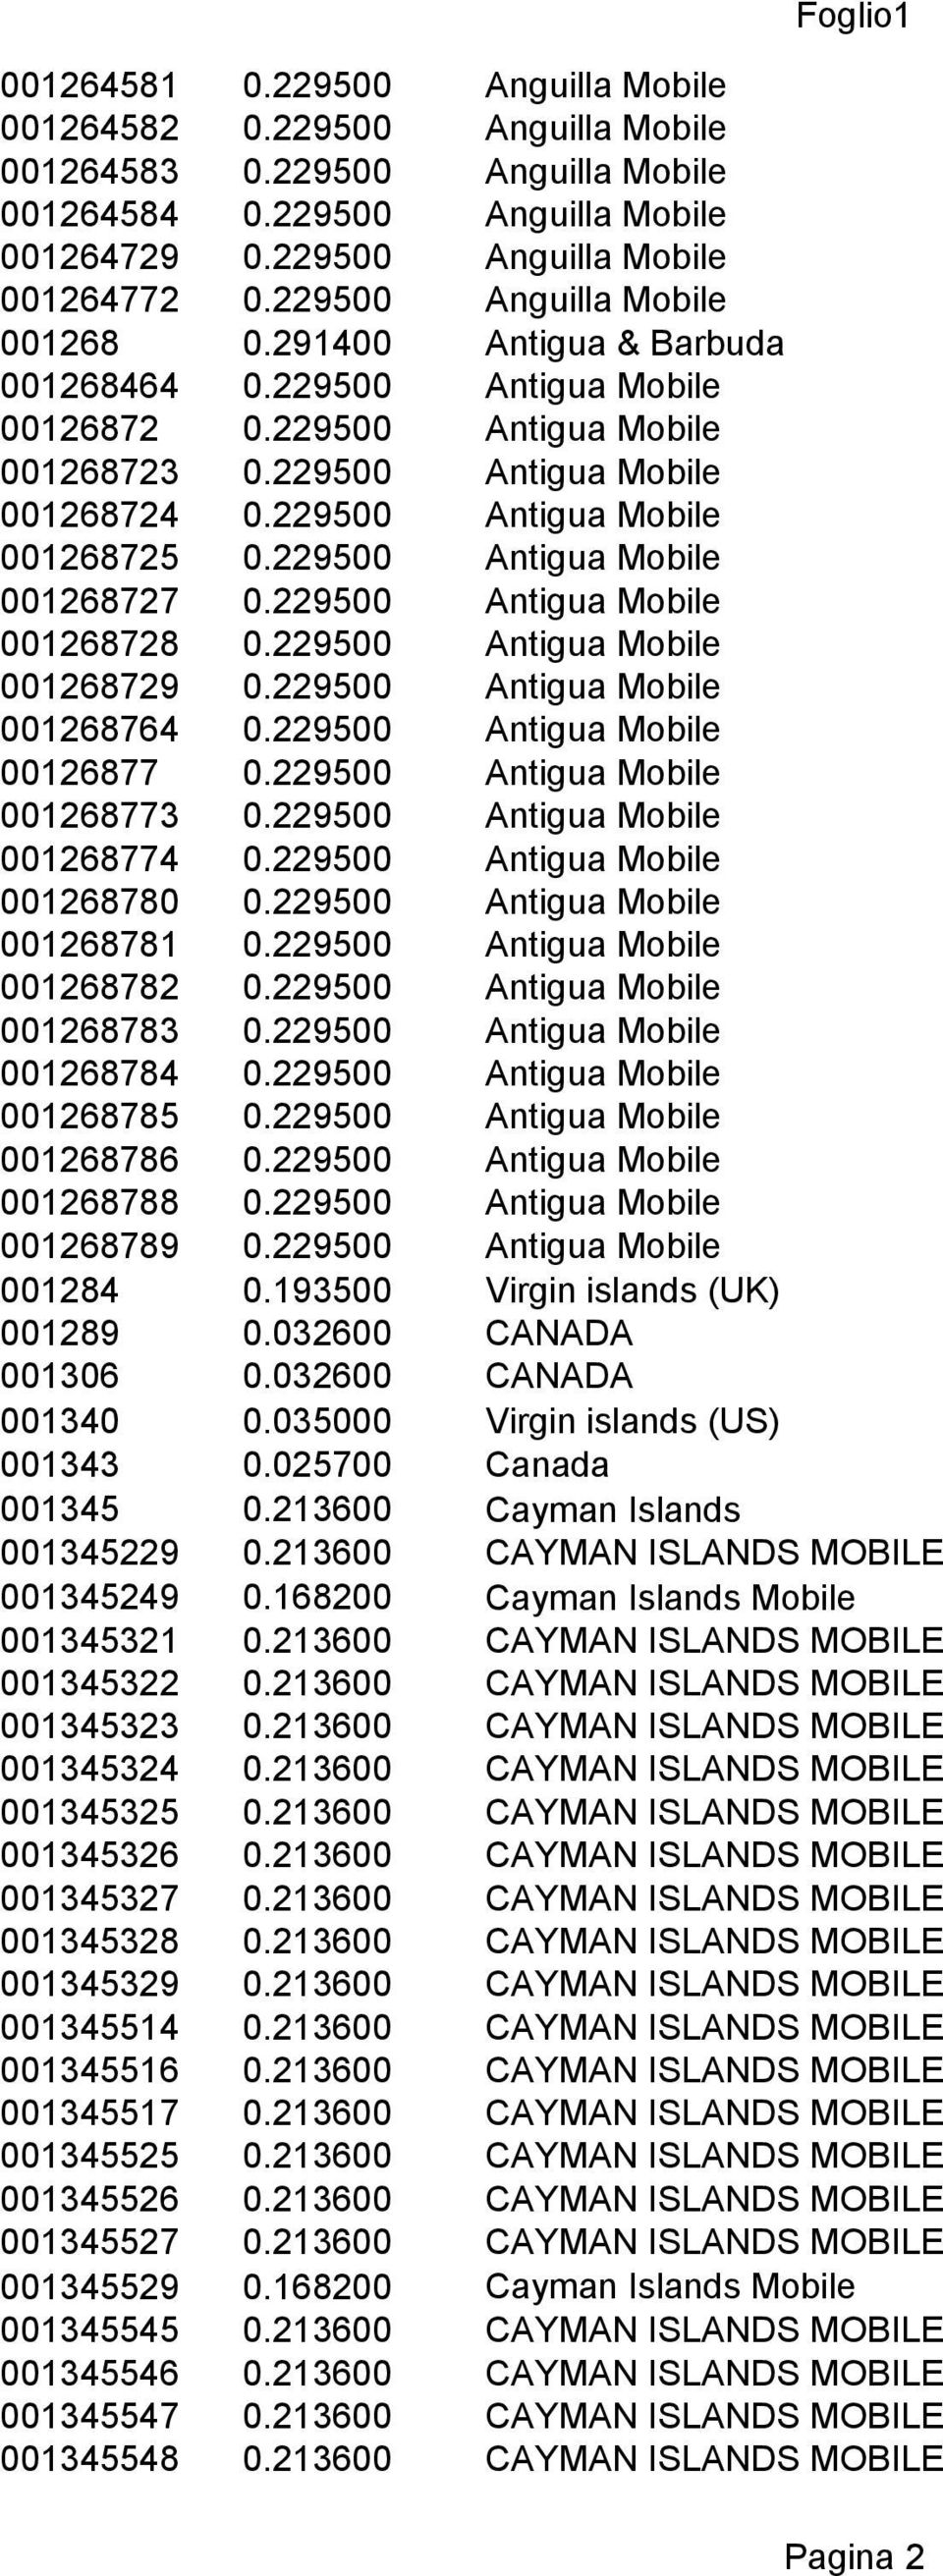 229500 Antigua Mobile 001268725 0.229500 Antigua Mobile 001268727 0.229500 Antigua Mobile 001268728 0.229500 Antigua Mobile 001268729 0.229500 Antigua Mobile 001268764 0.